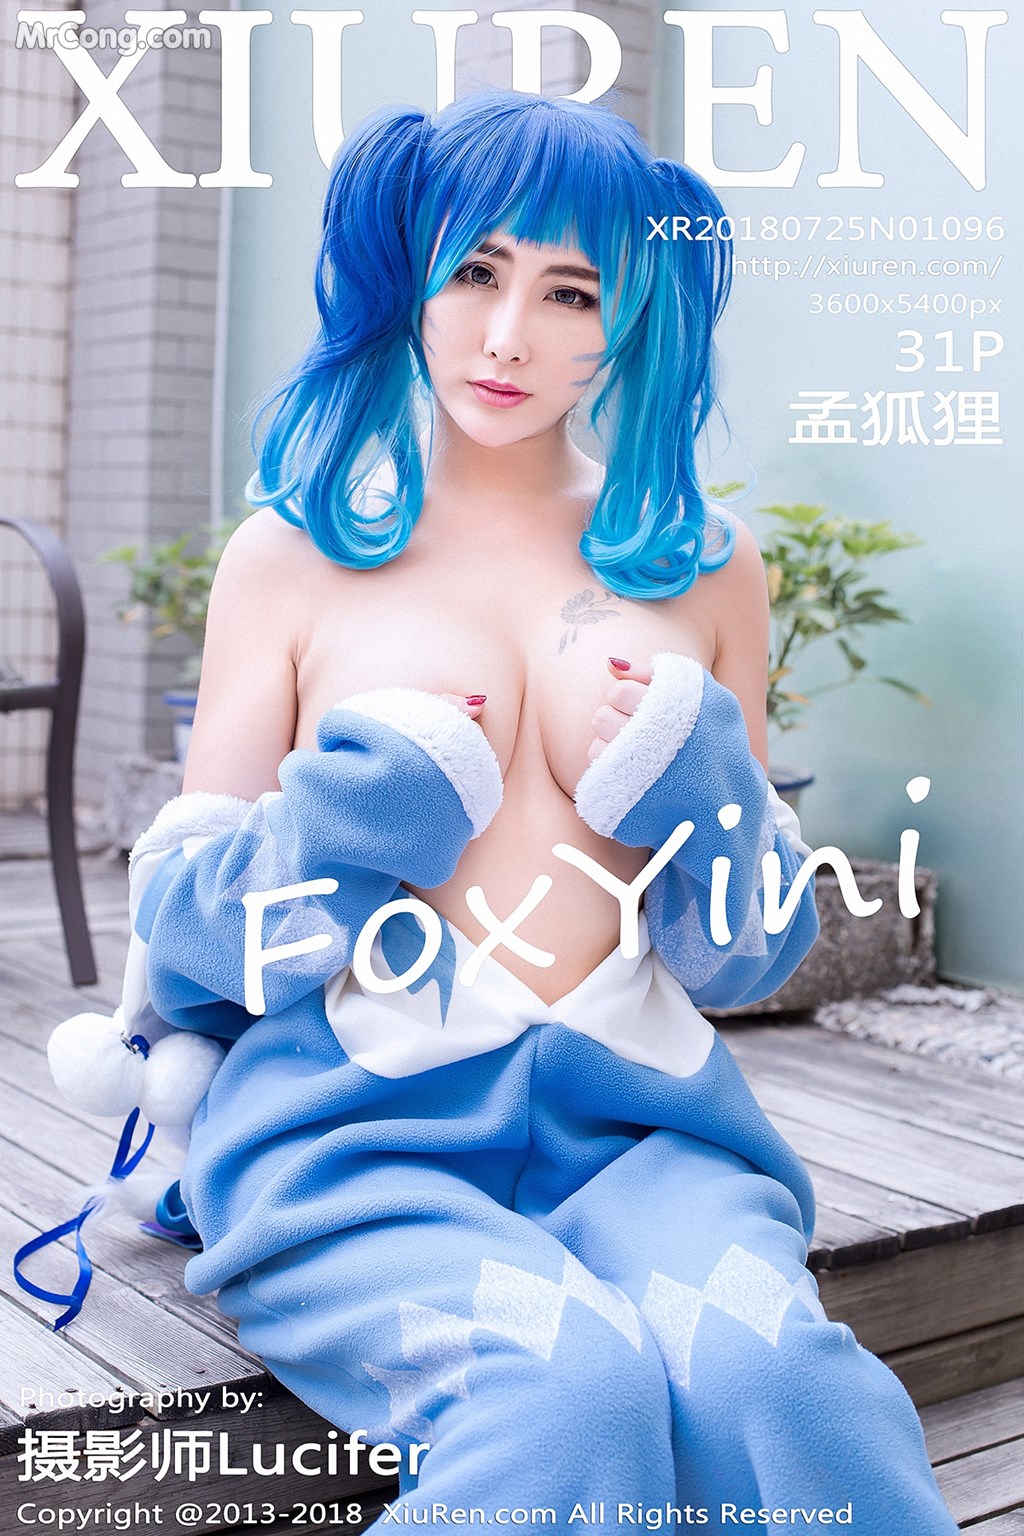 XIUREN No. 1096: FoxYini Model (孟 狐狸) (32 photos)